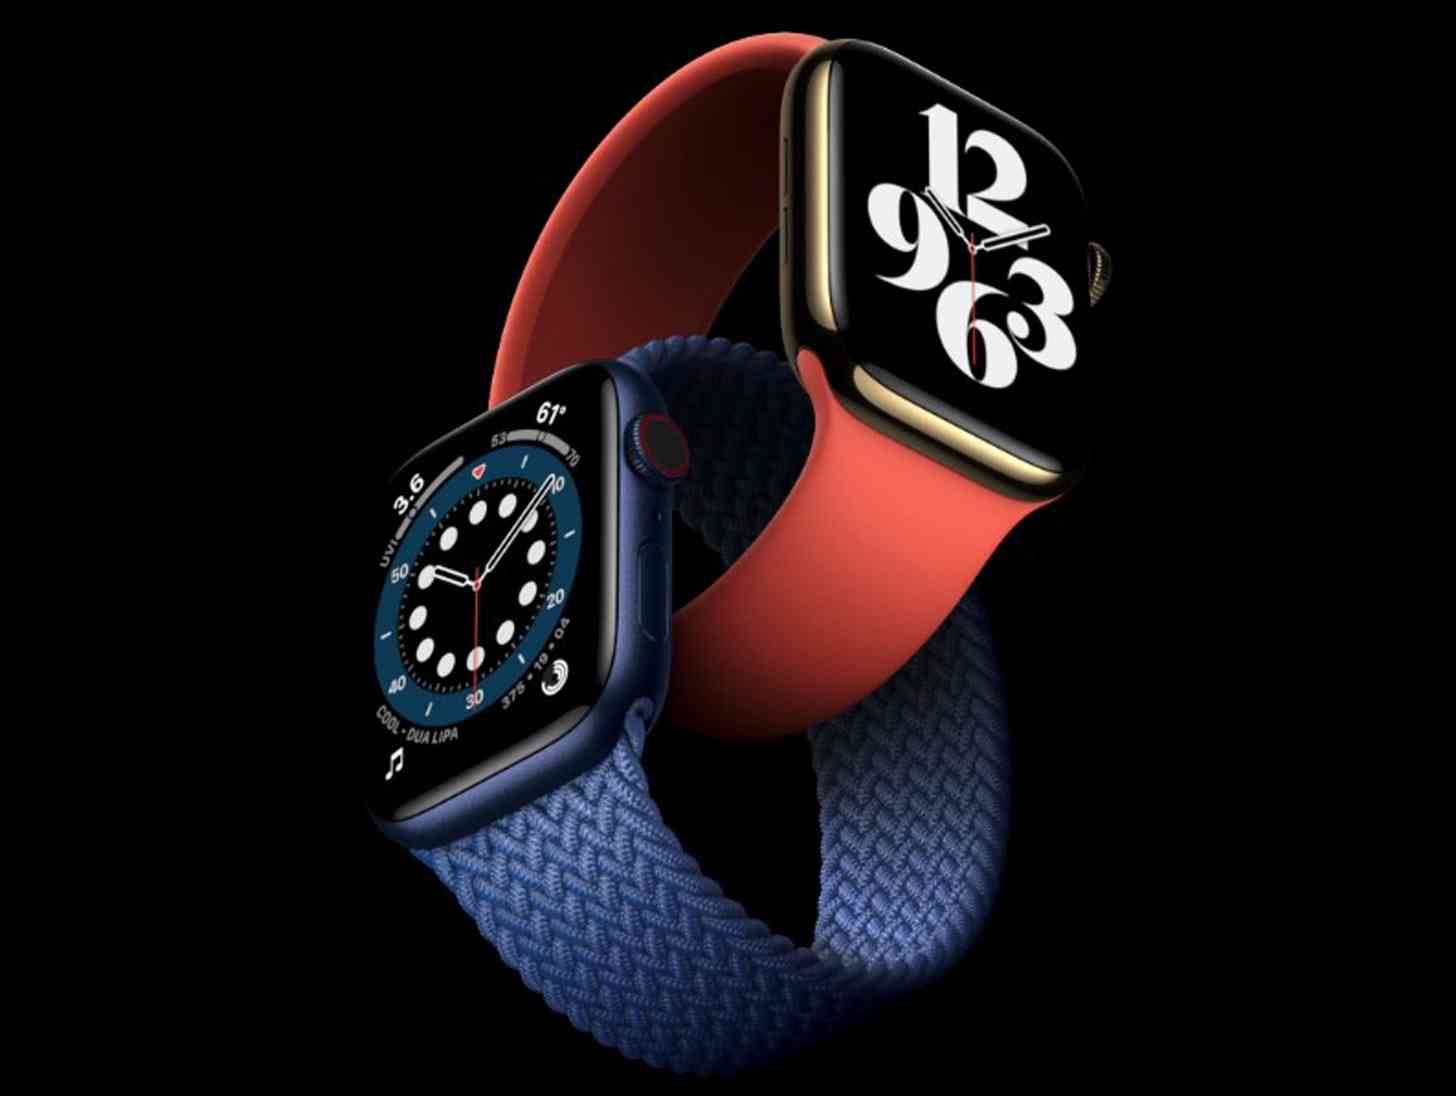 Apple Watch Series 6 official blue aluminum